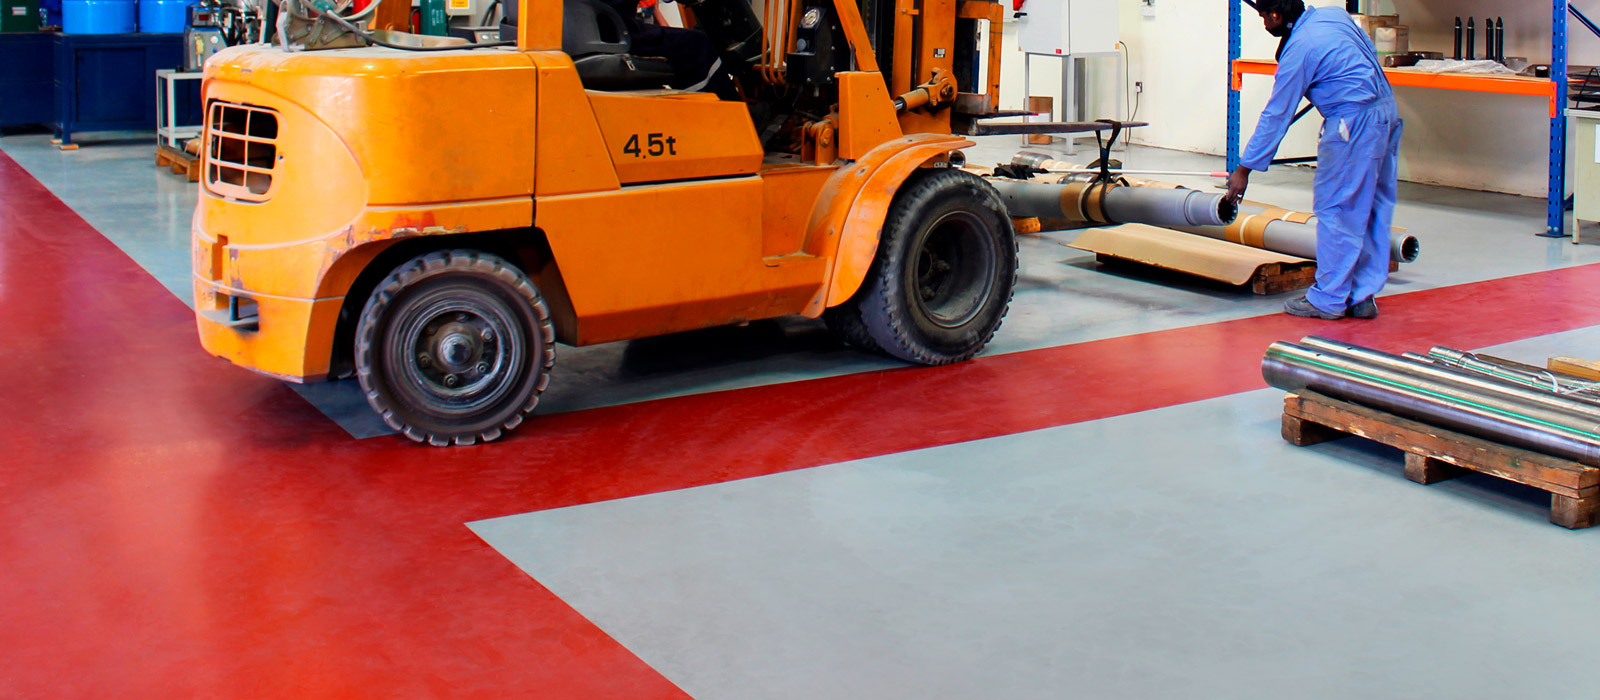 CGS prpose des revêtements de sol industriel haute performance, résistants aux fortes sollicitations mécaniques et à l'usure.